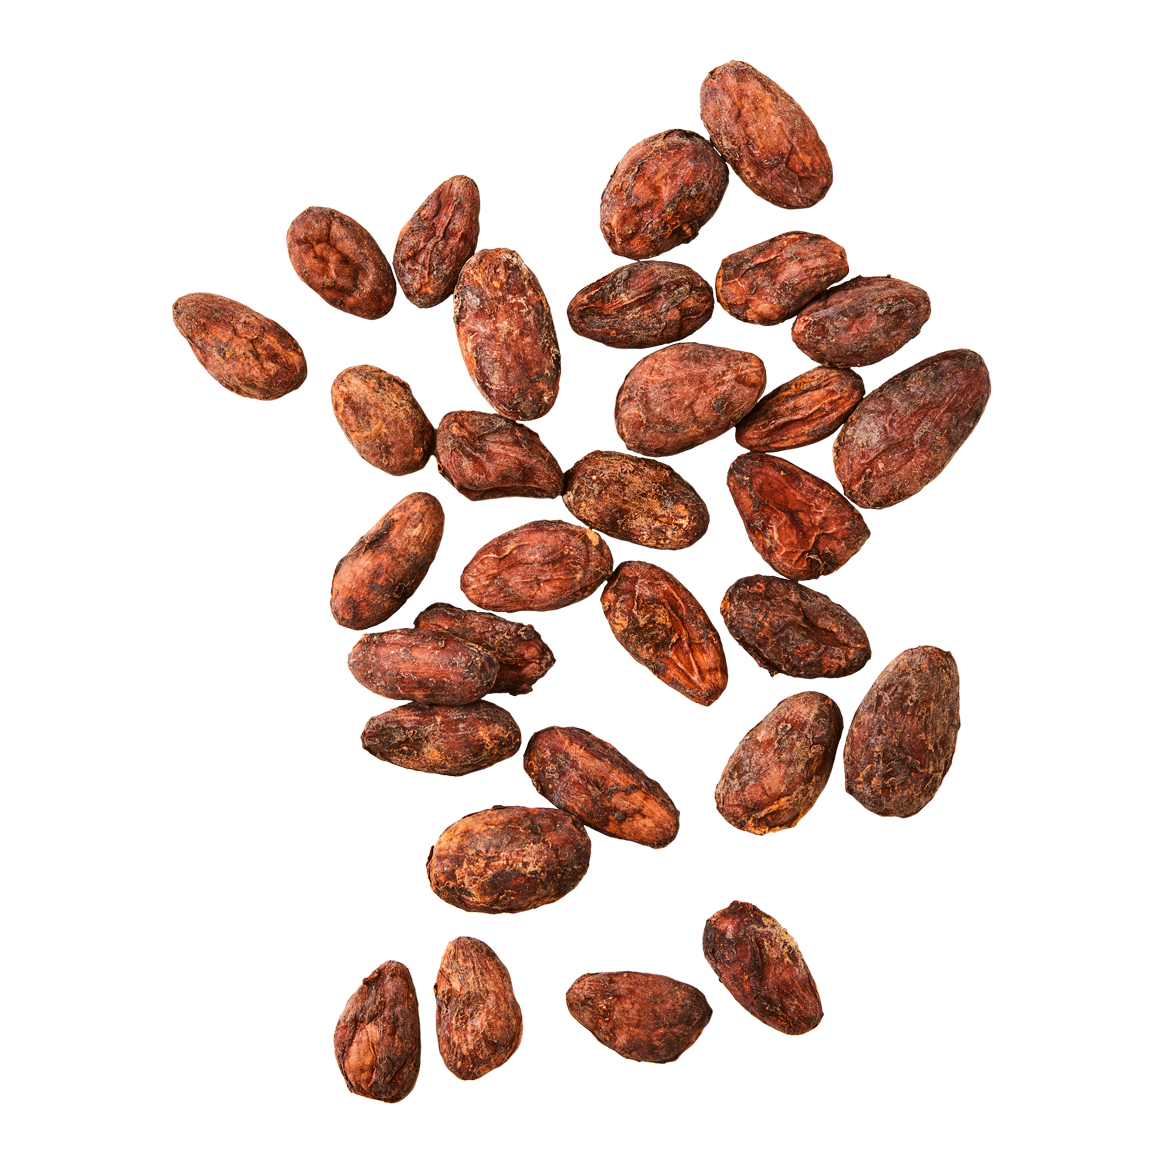 Olmekakao - Kakaobohnen - organisch produziert 1kg